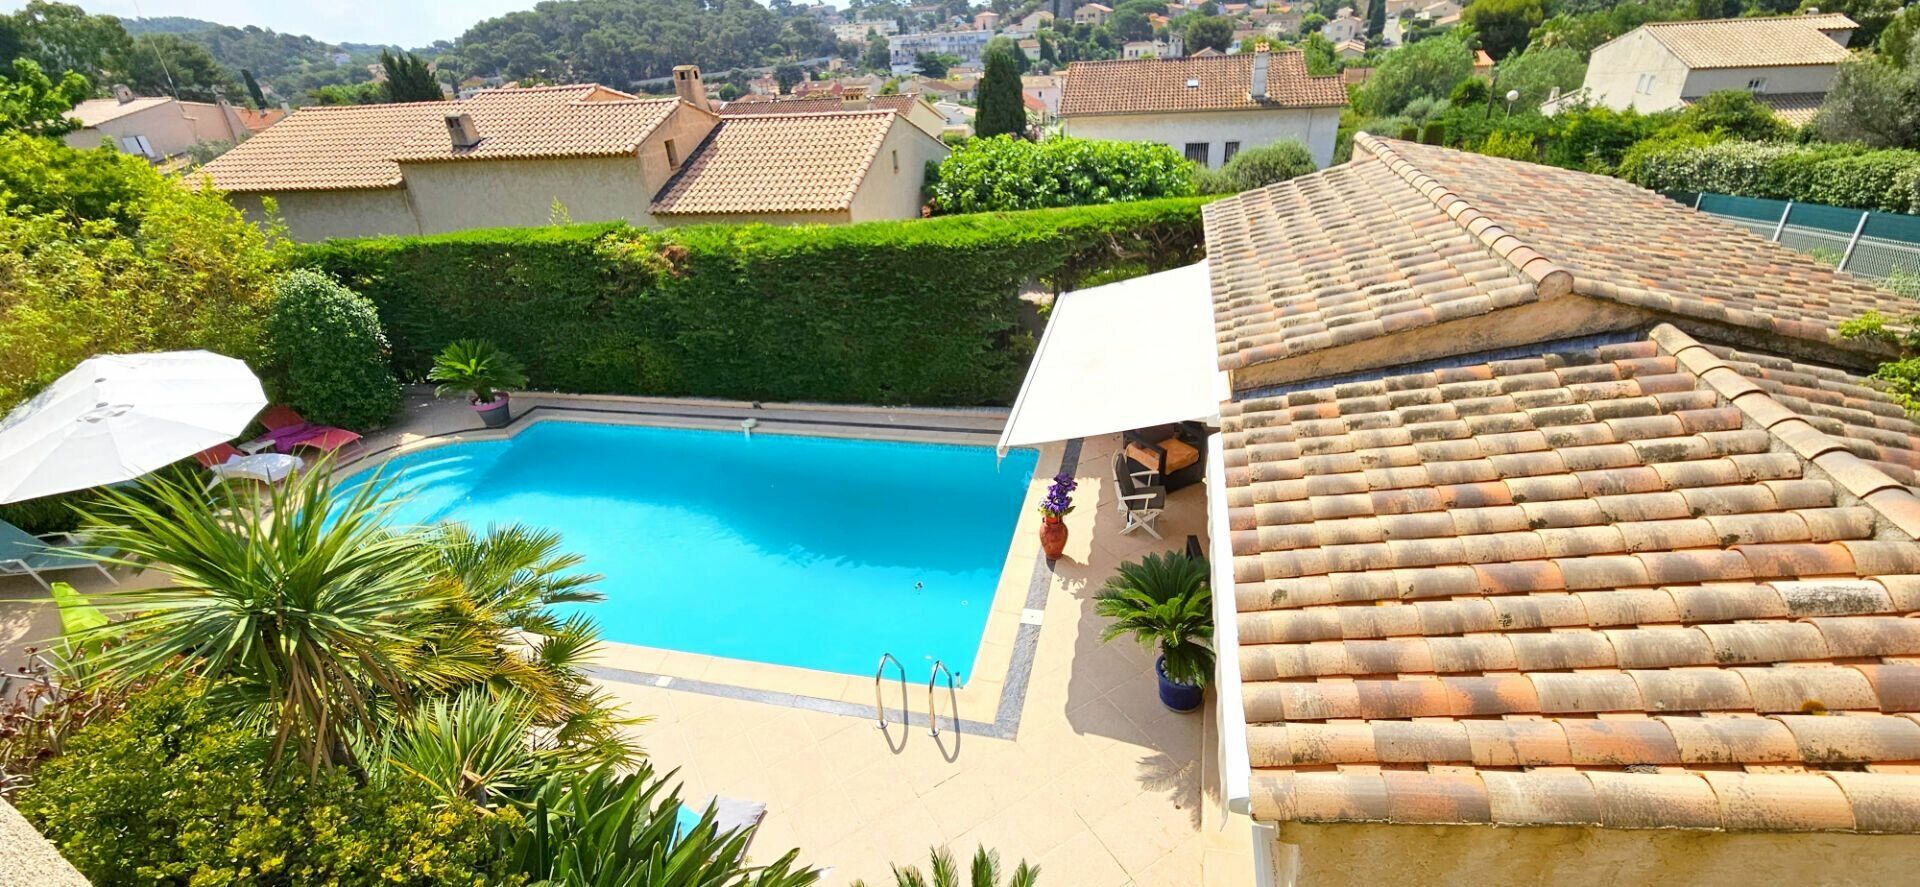 Maison à vendre 6 260m2 à La Seyne-sur-Mer vignette-7